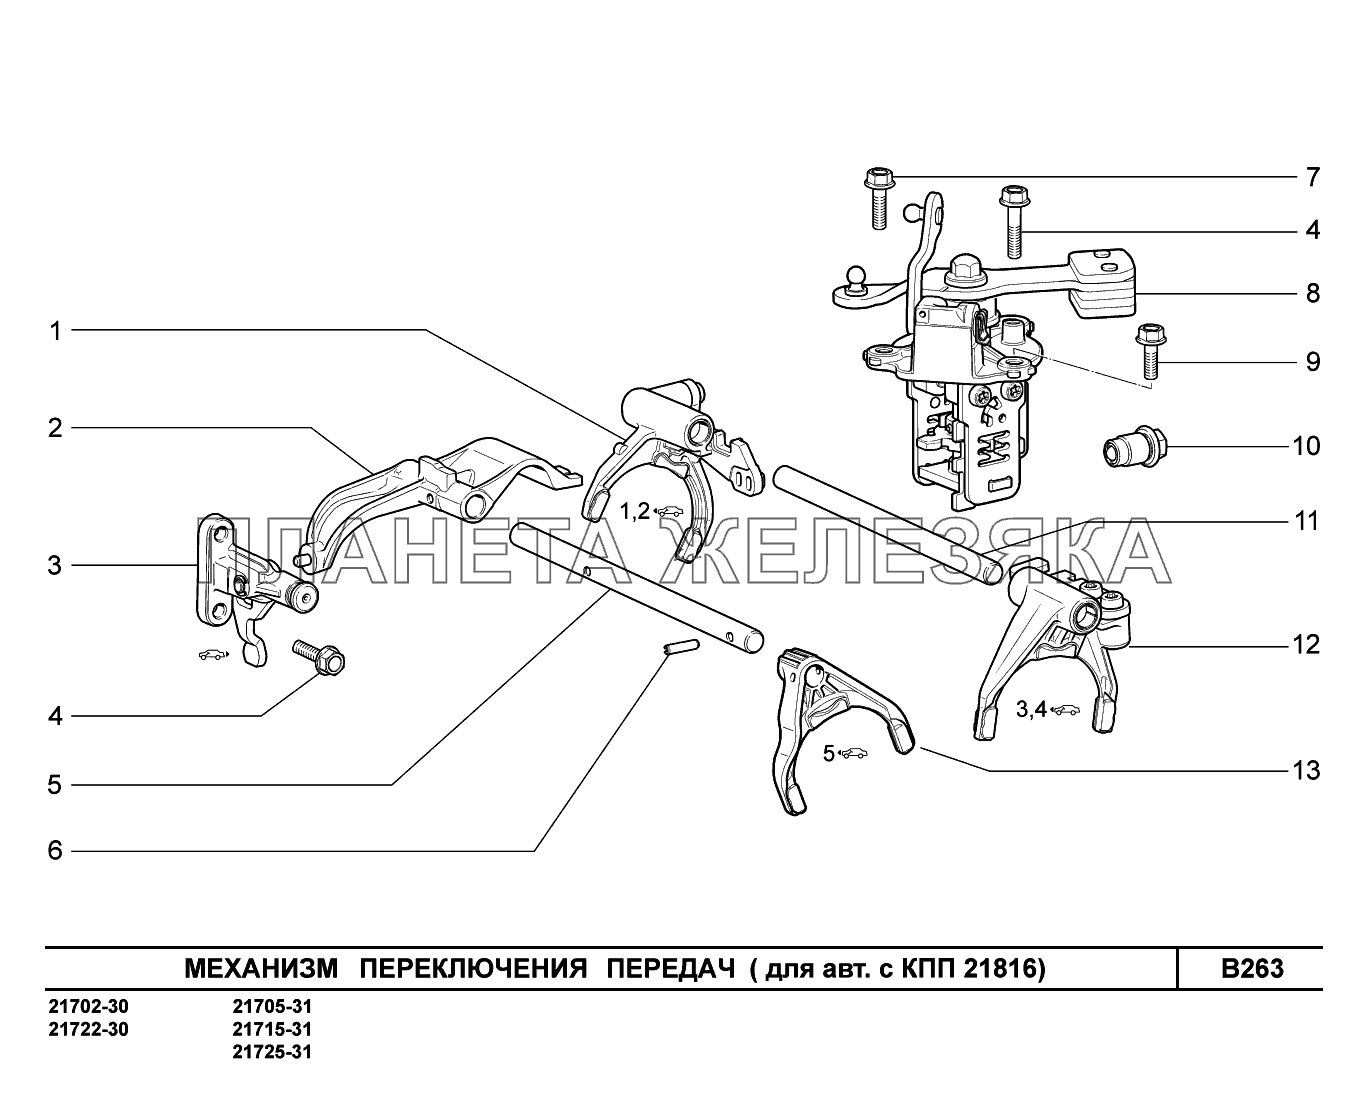 B263. Механизм выбора и переключения передач ВАЗ-2170 